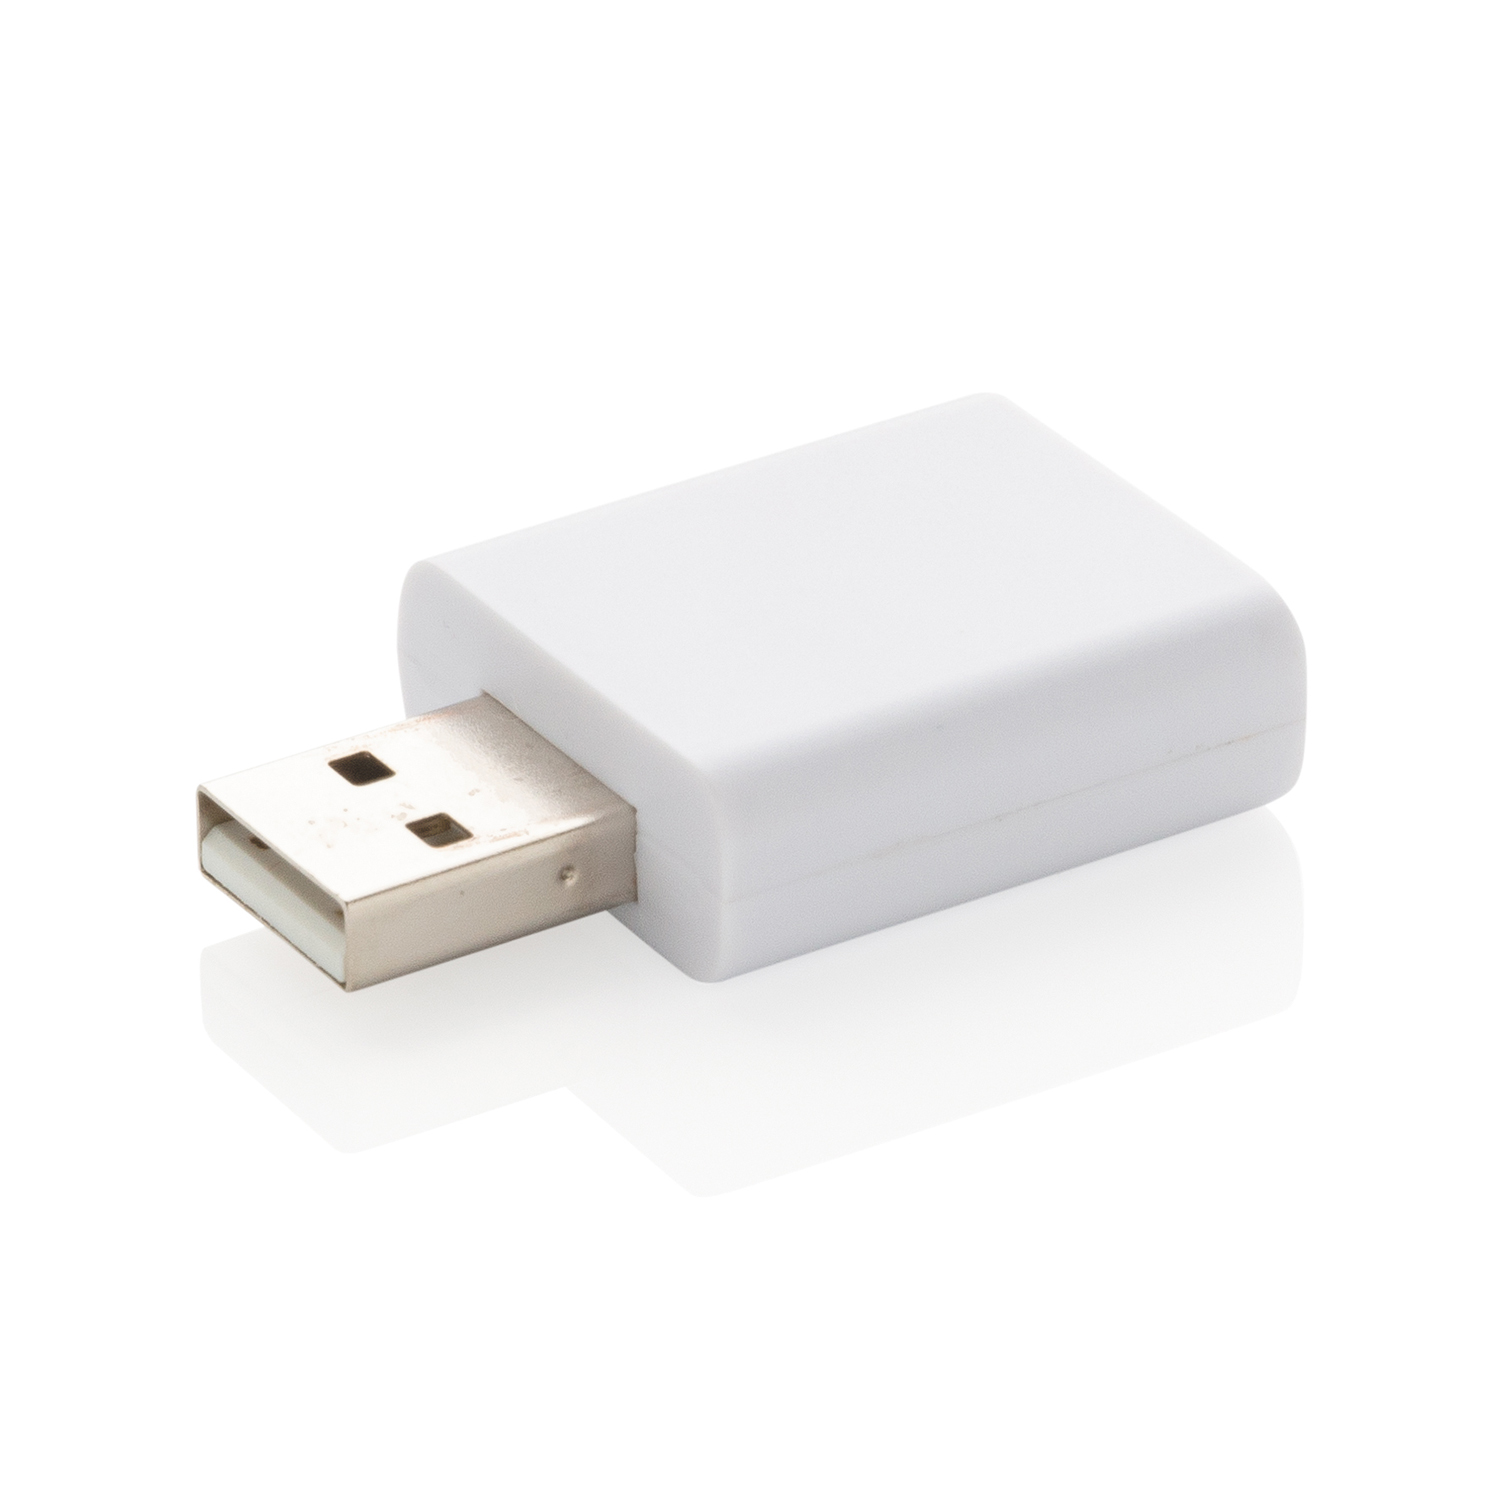 USB-протектор для защиты данных